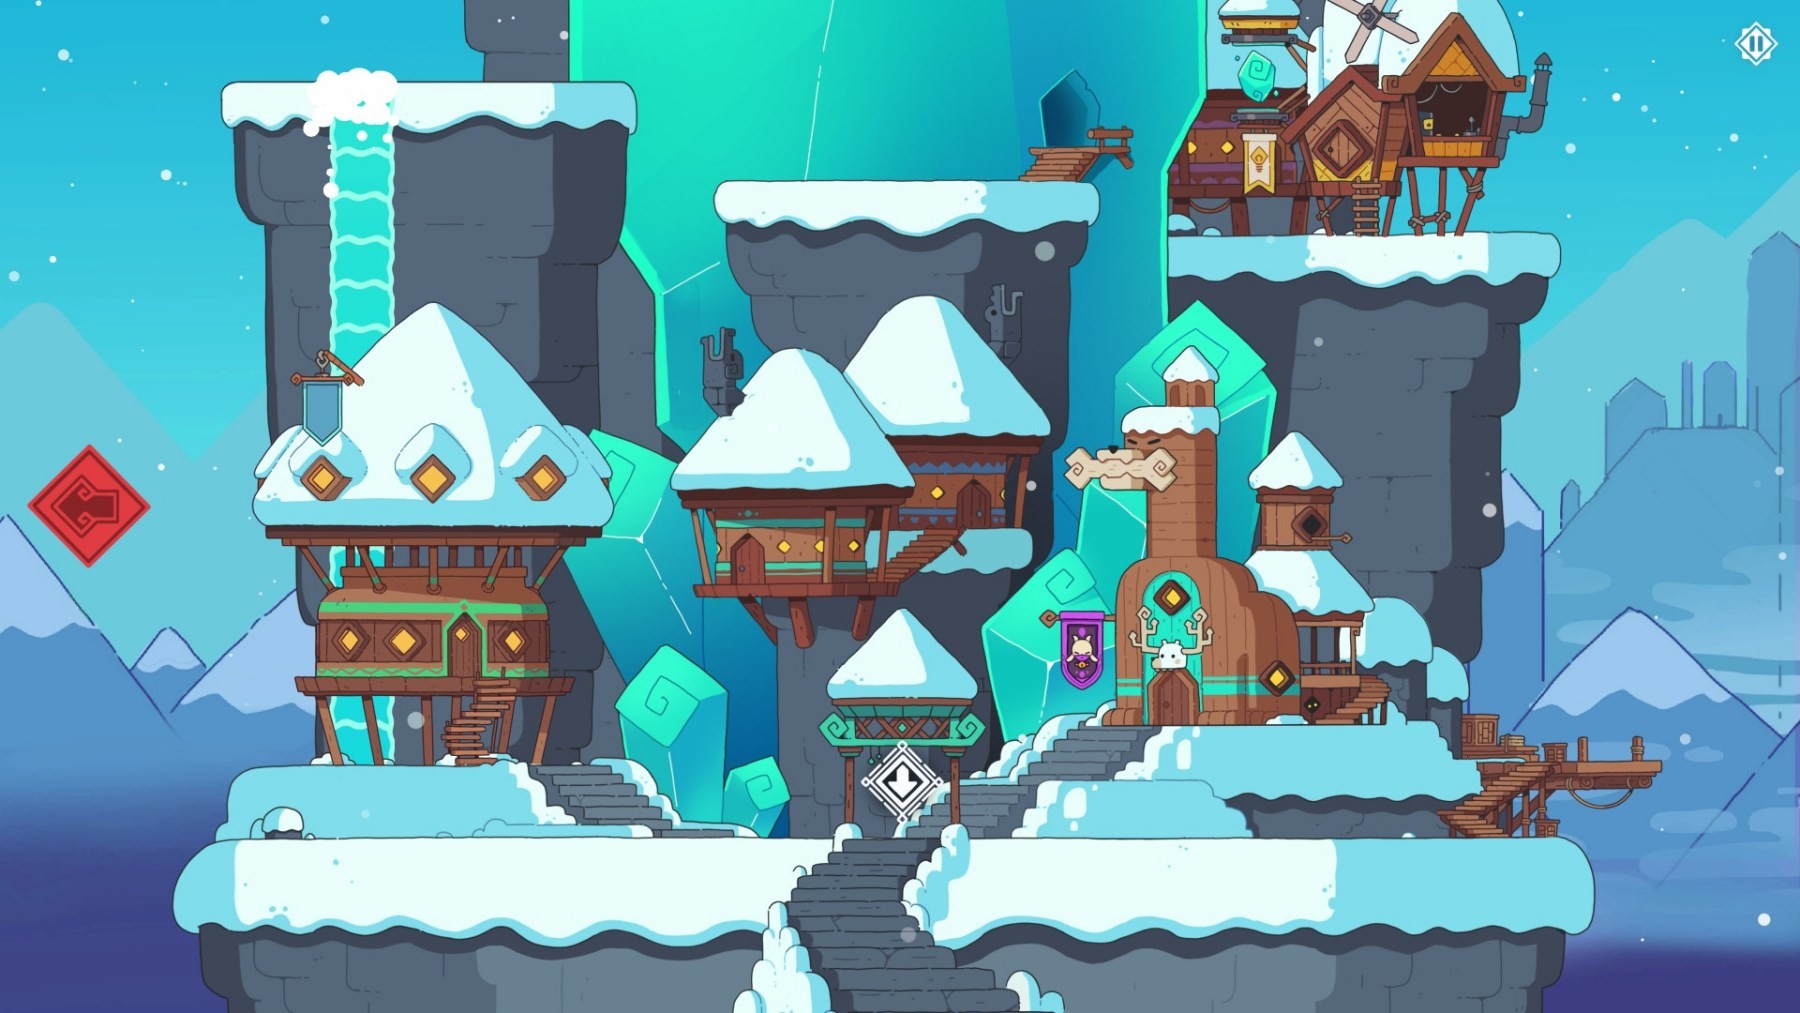 《雪居之地》背景設定及玩法簡析 雪居之地好玩嗎 - 第1張